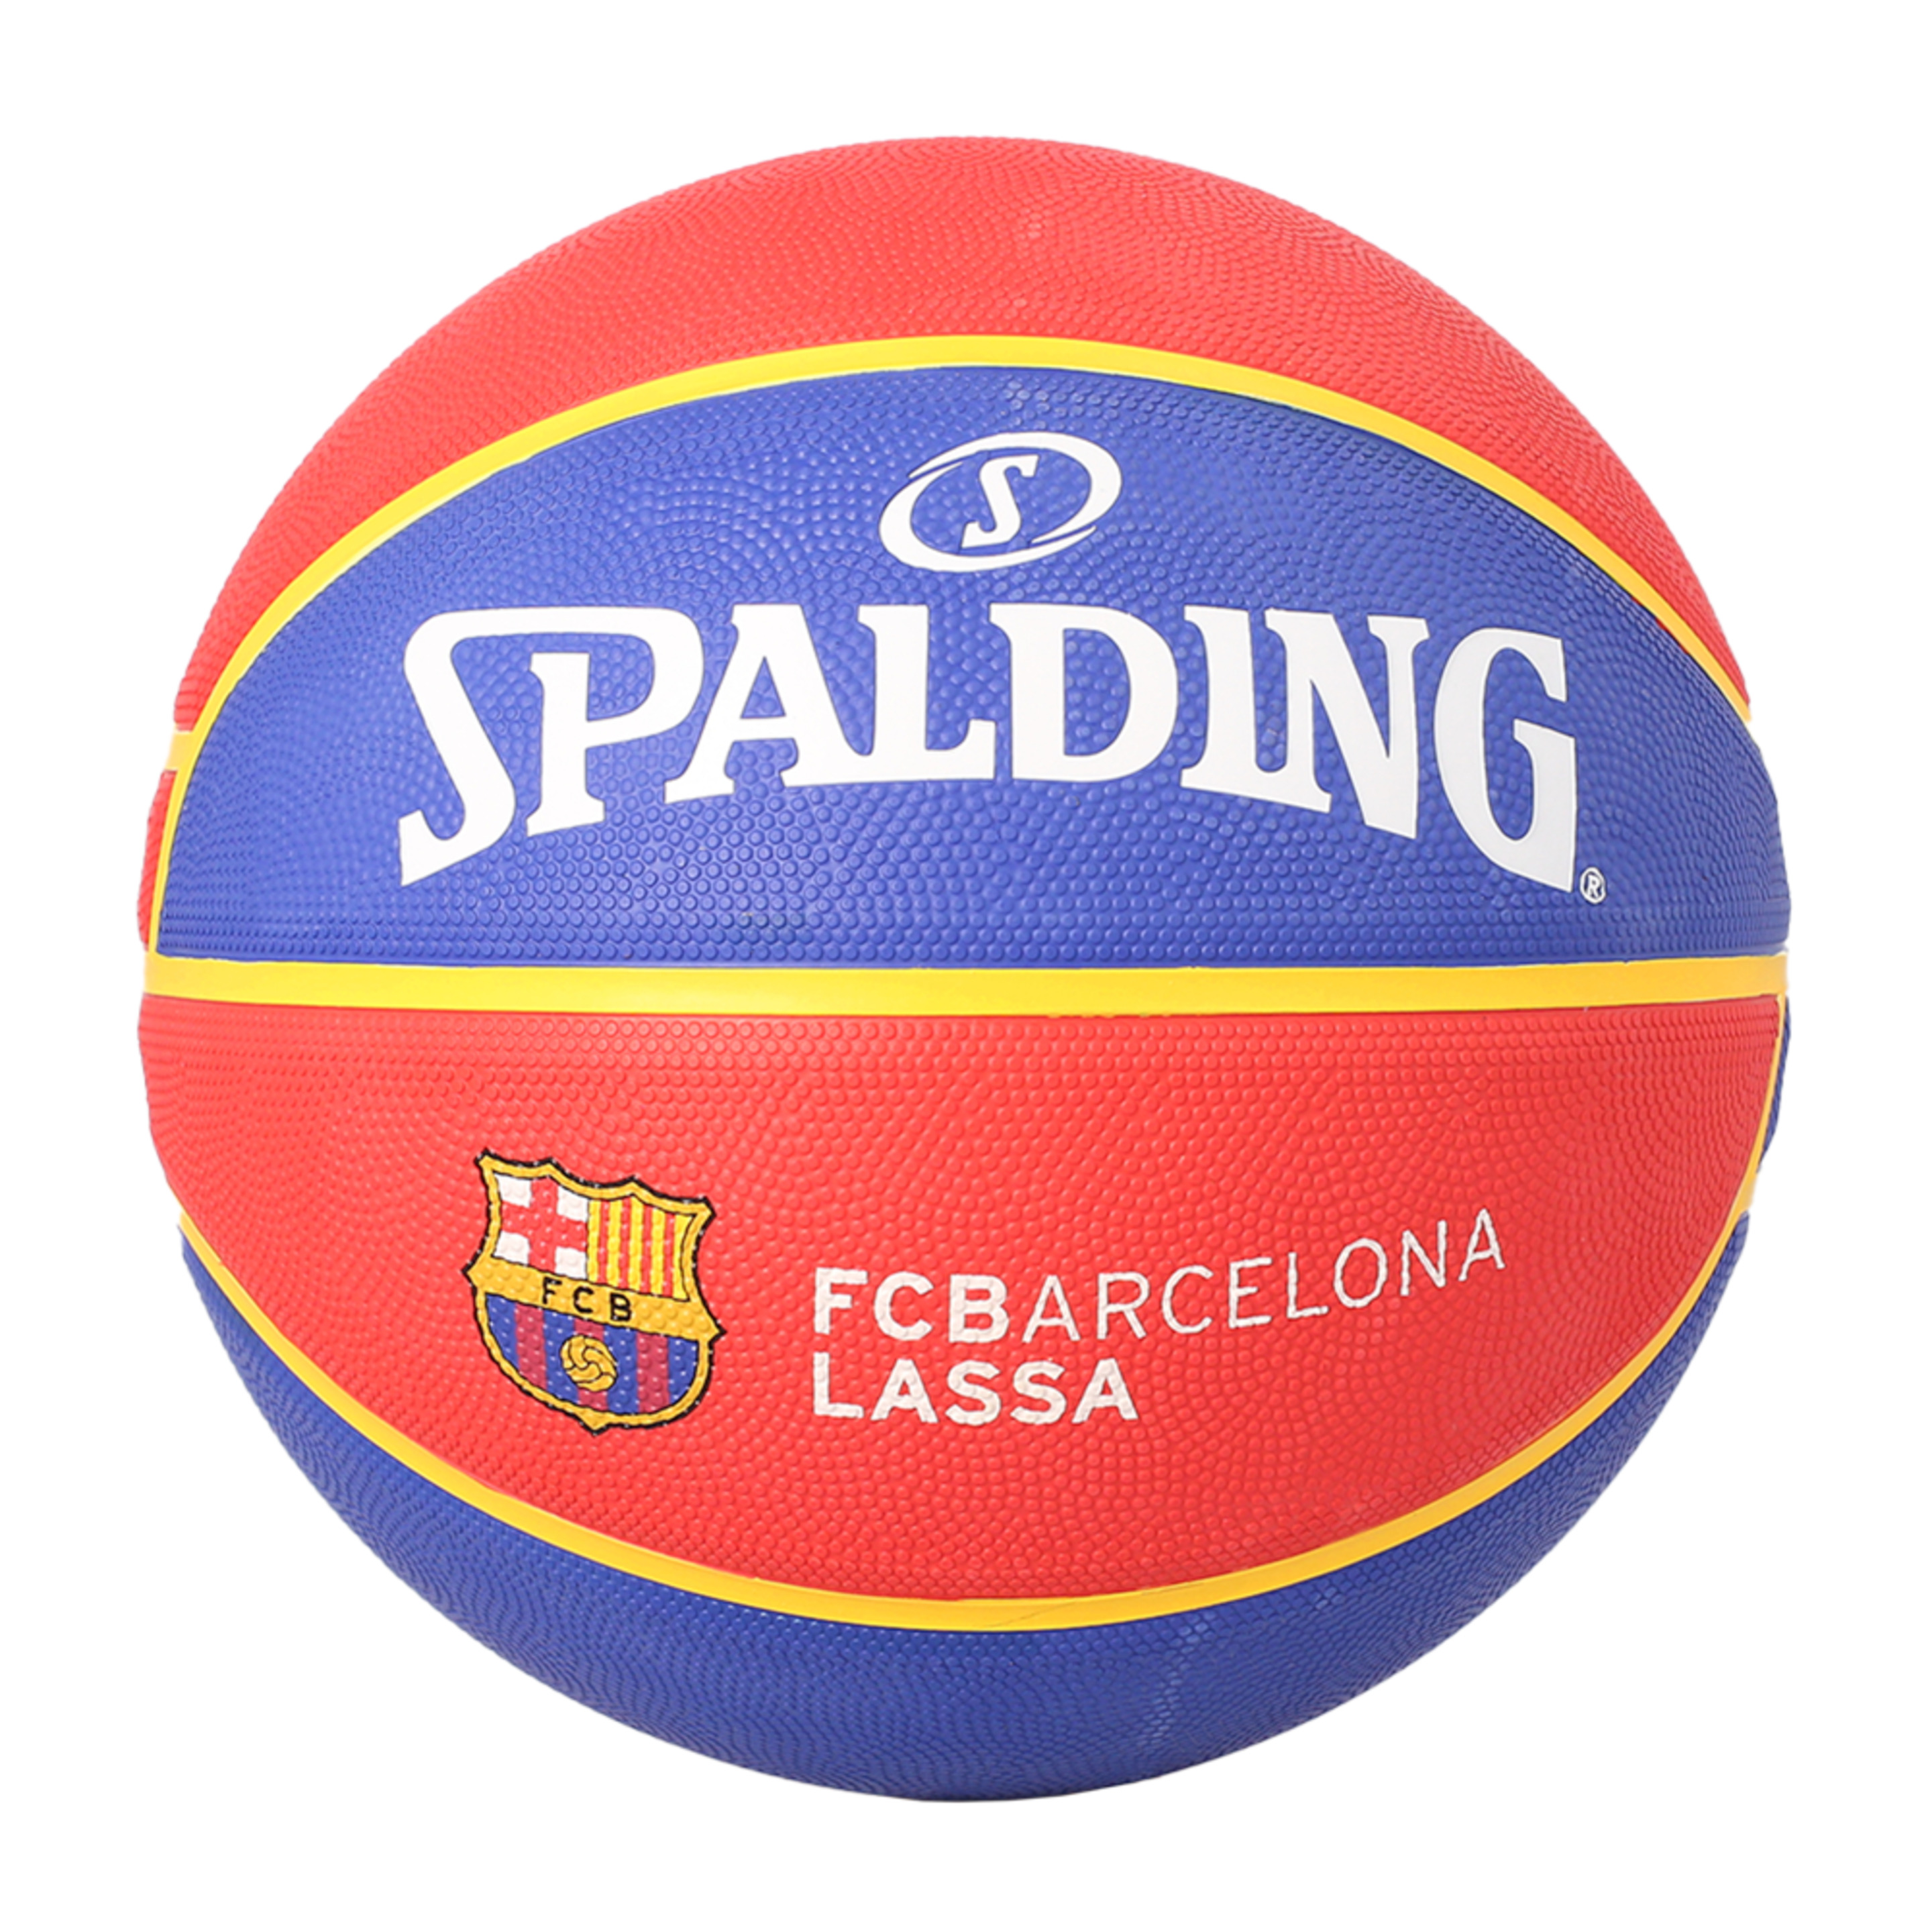 Spalding Fc Barcelona Euroleague Basquete Sz7 - Azul Claro/Vermelho | Sport Zone MKP